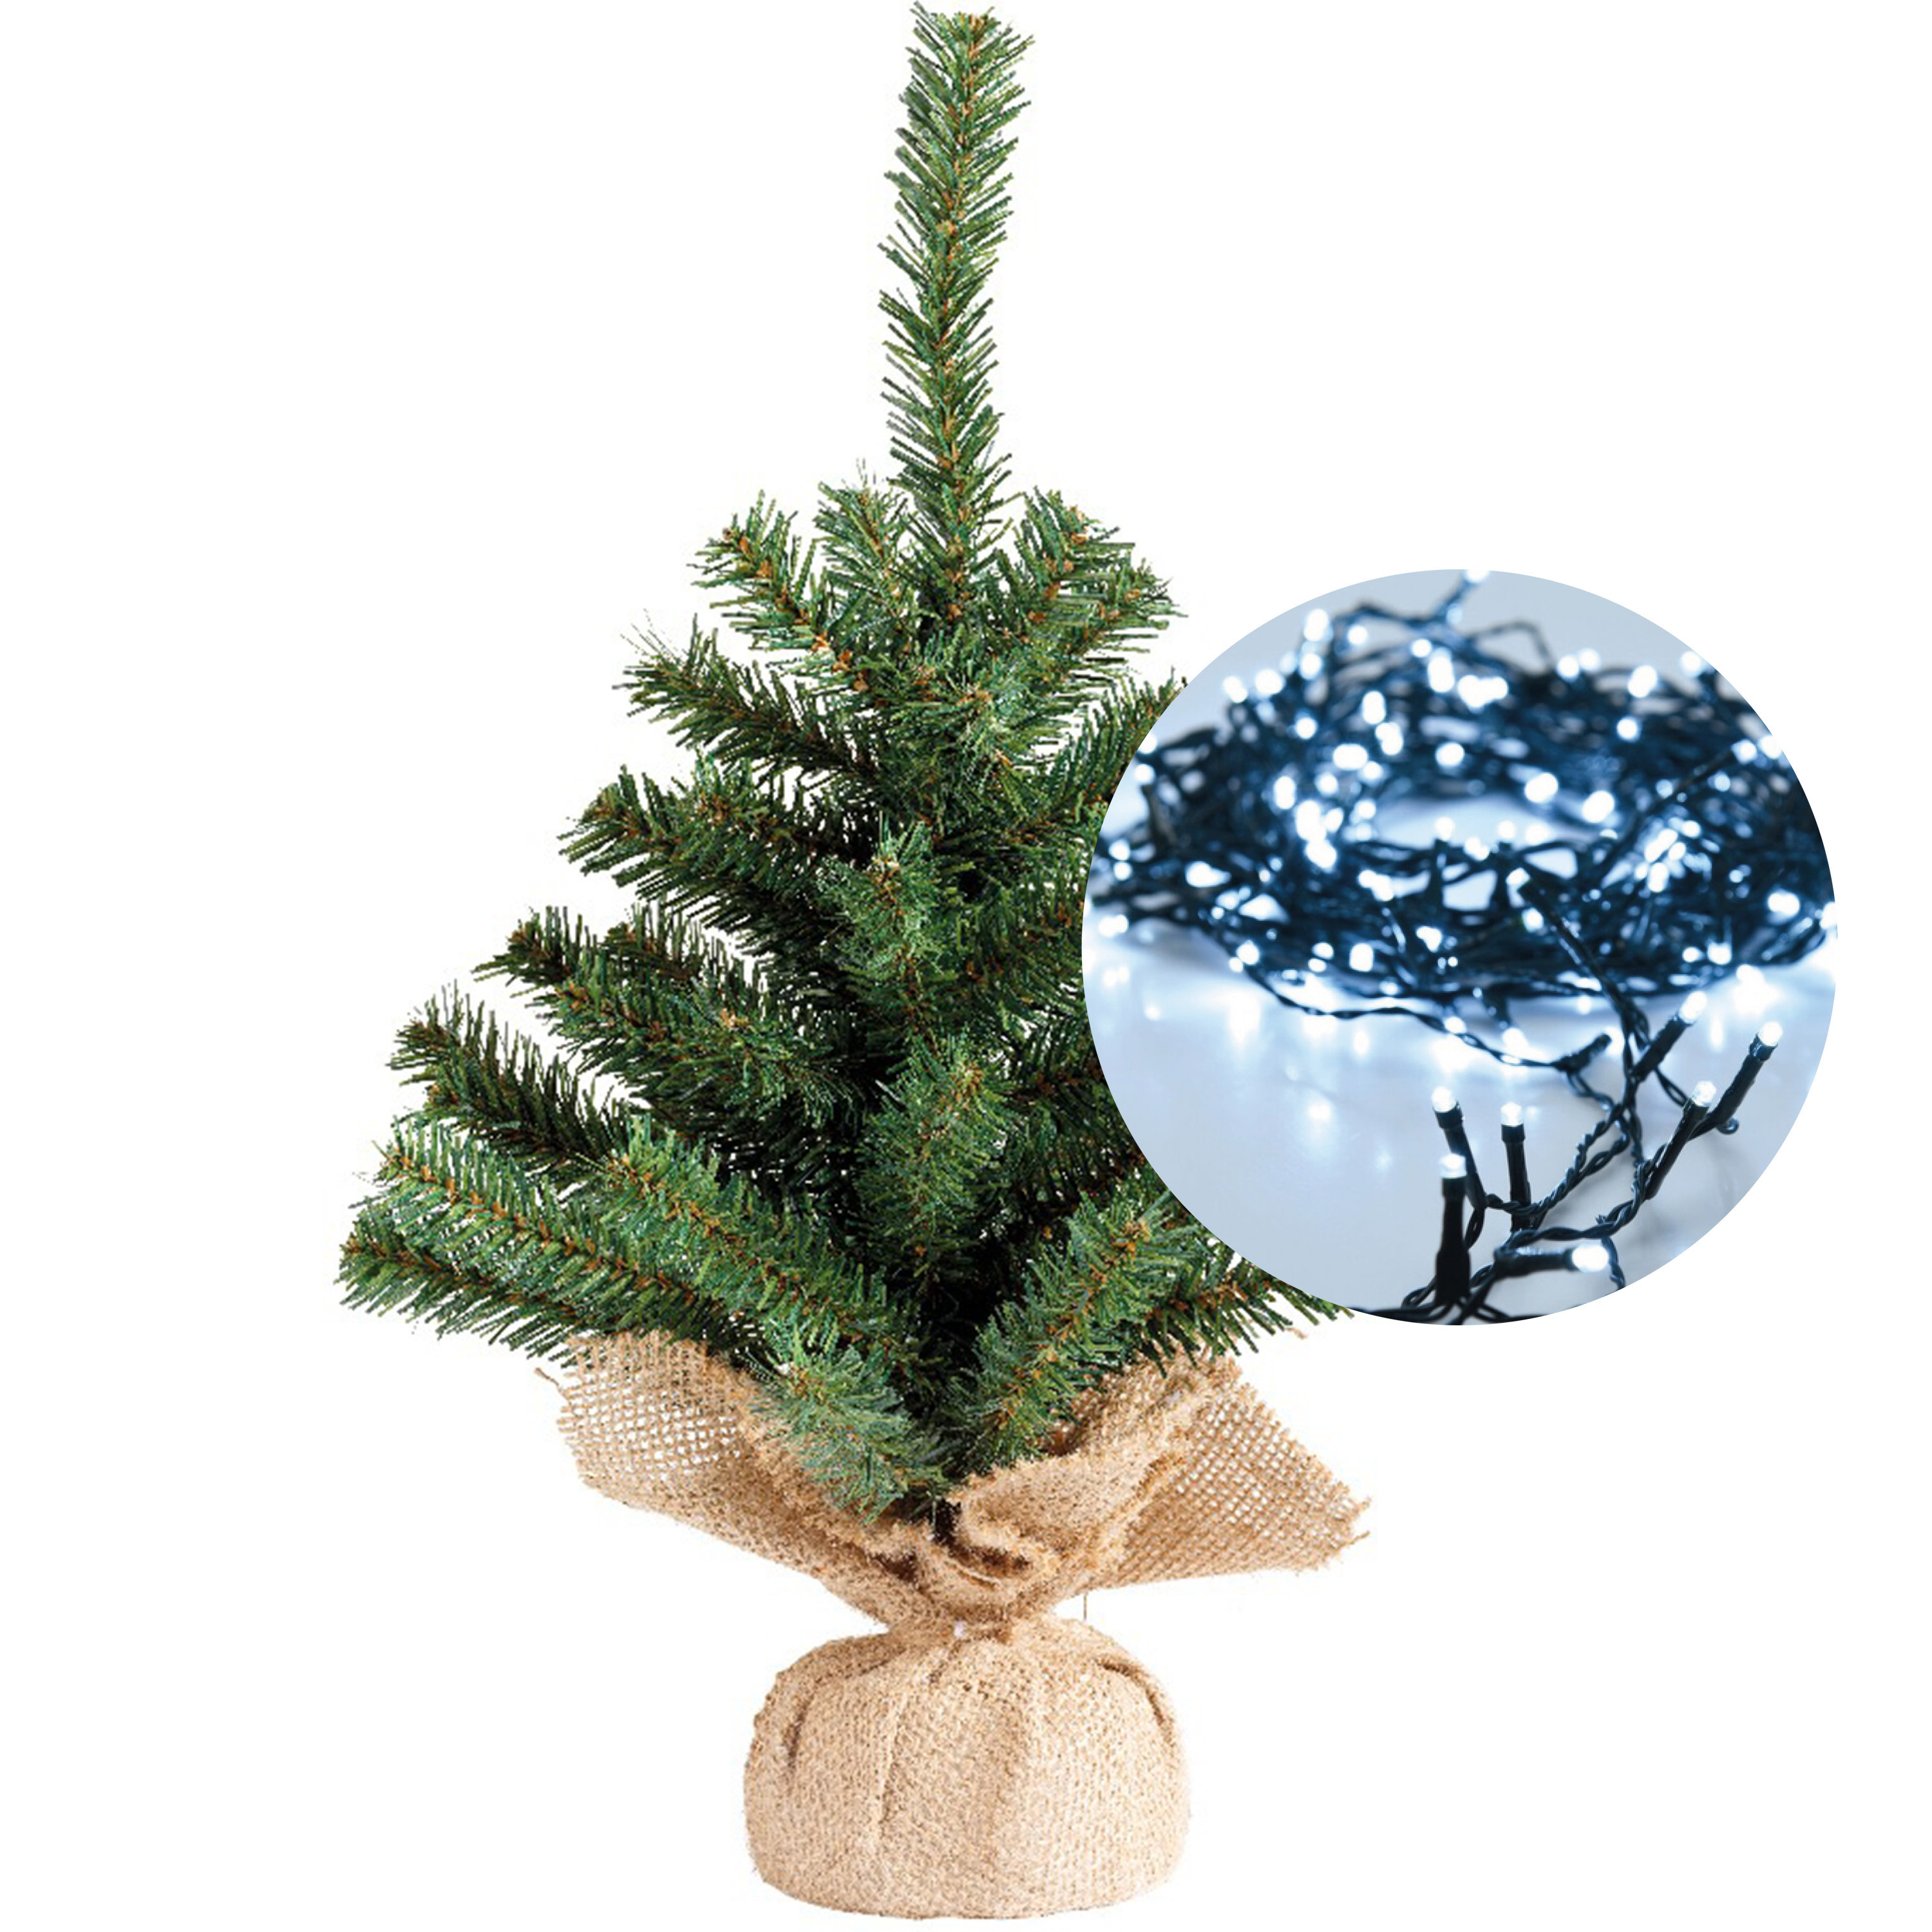 Mini kerstboom 45 cm met kerstverlichting helder wit 300 cm 40 leds